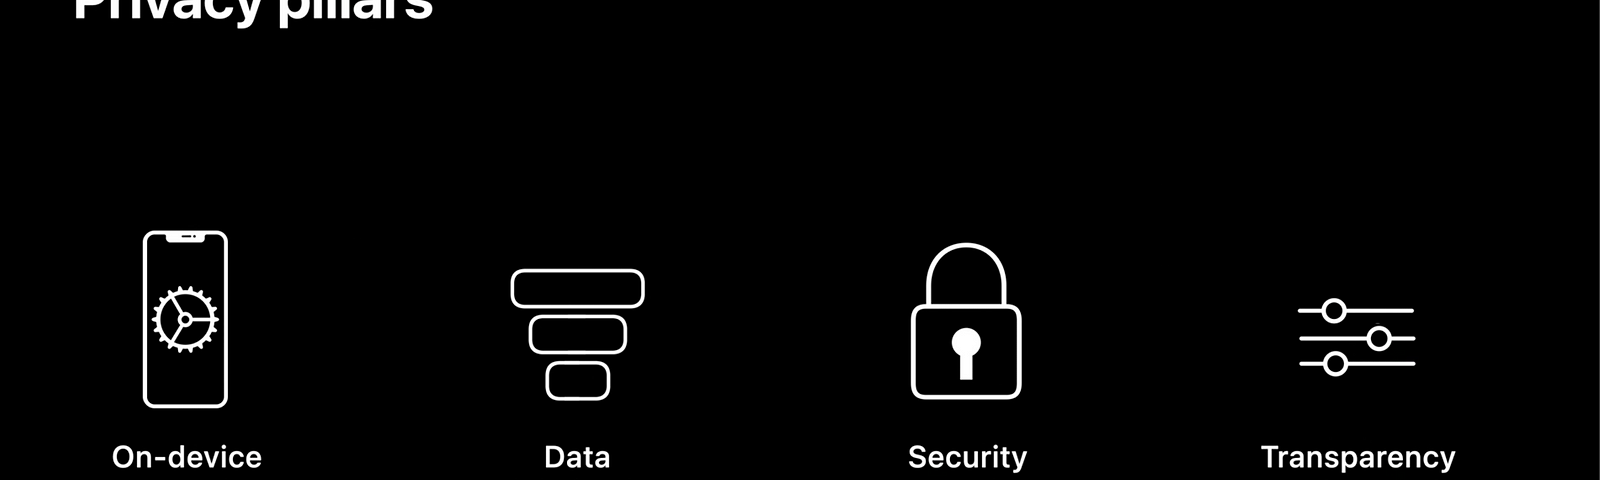 os pilares, da esquerda para direita, processamento no dispositivo, minimização de dados, segurança e transparência e control